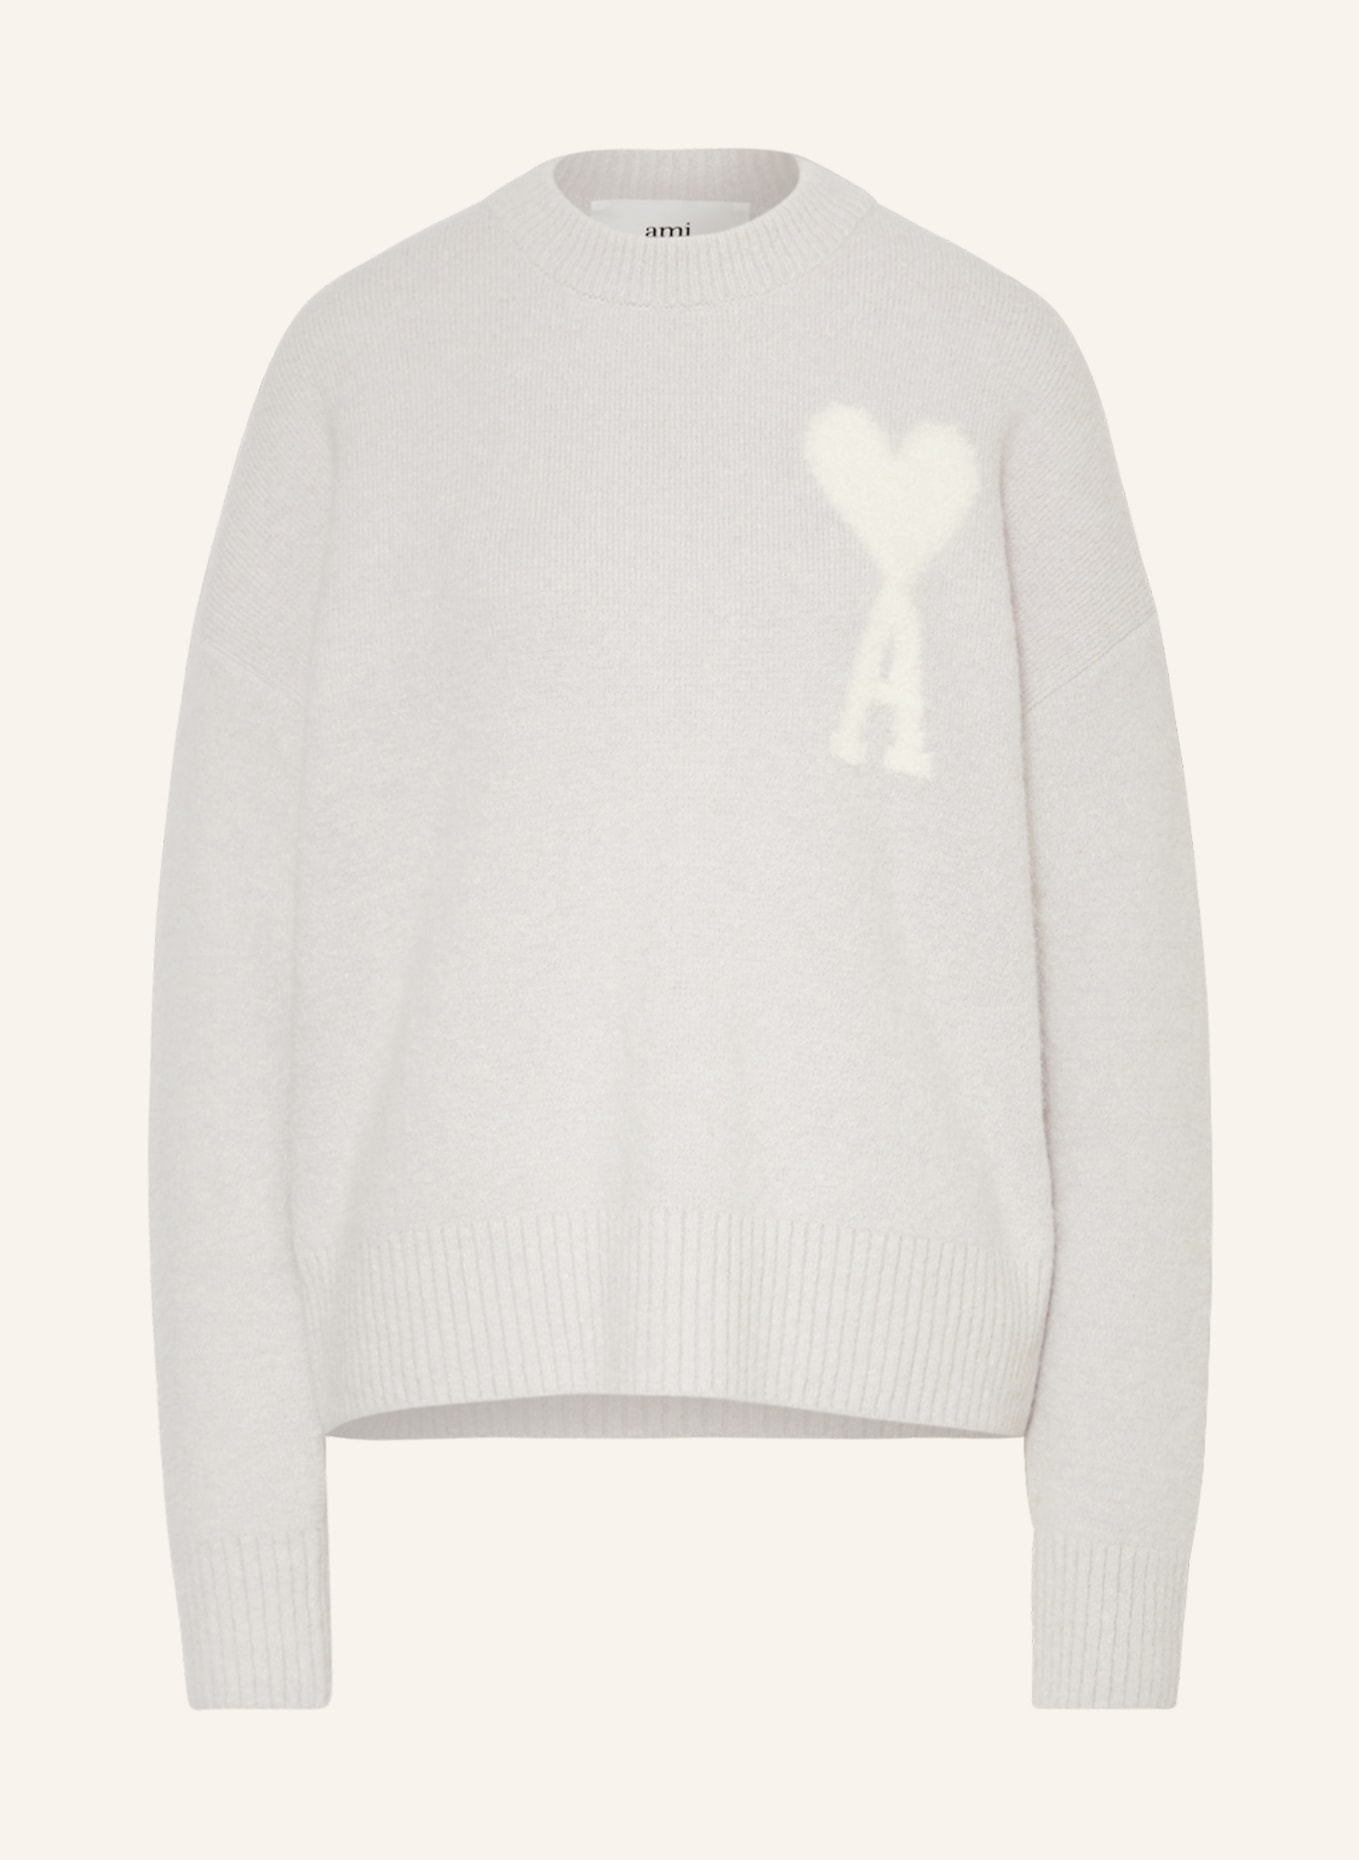 AMI PARIS Alpaka-Pullover, Farbe: HELLGRAU/ WEISS (Bild 1)